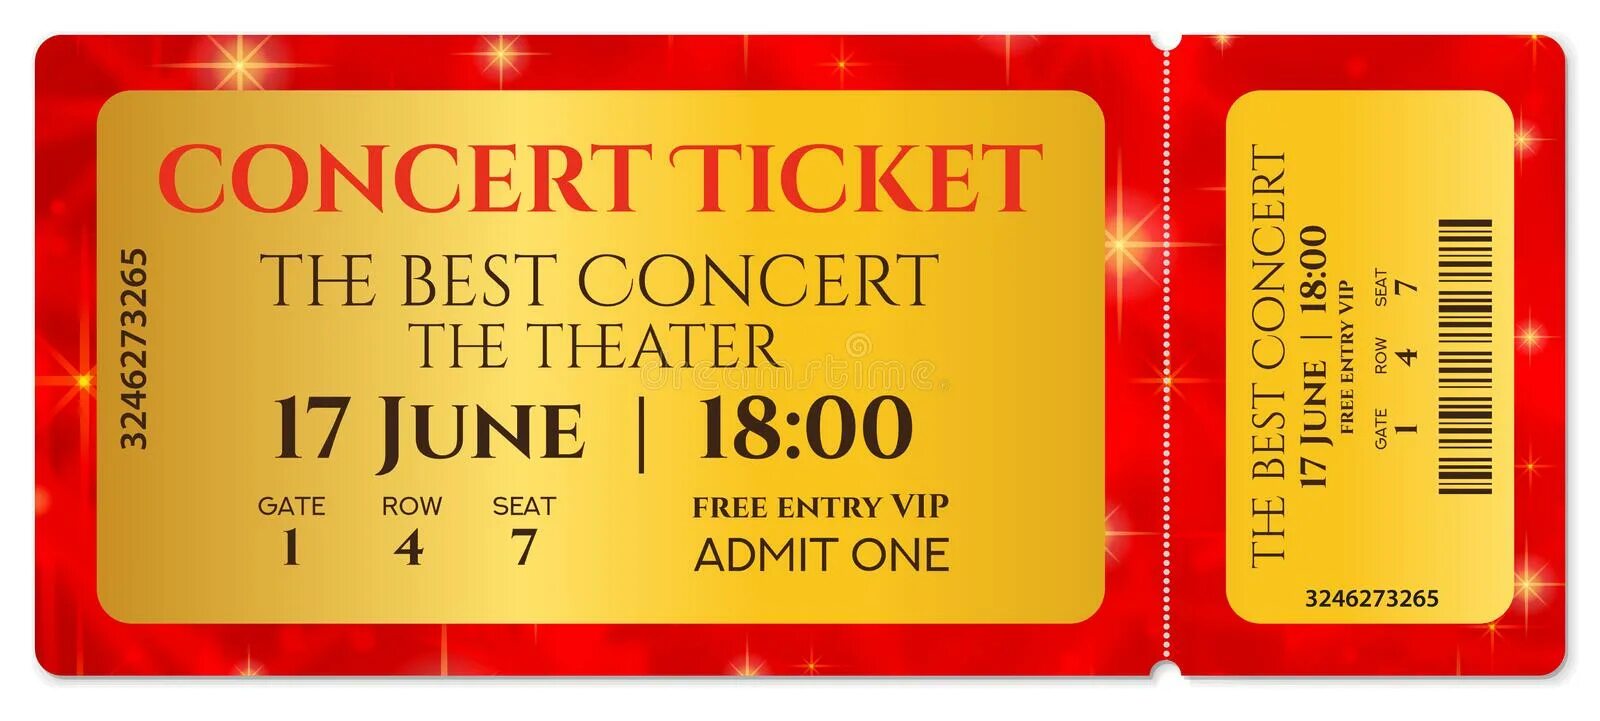 Tickets концерт. Макет билета на концерт. Билет шаблон. Фон для театральных билетов. Фон для билета в театр.